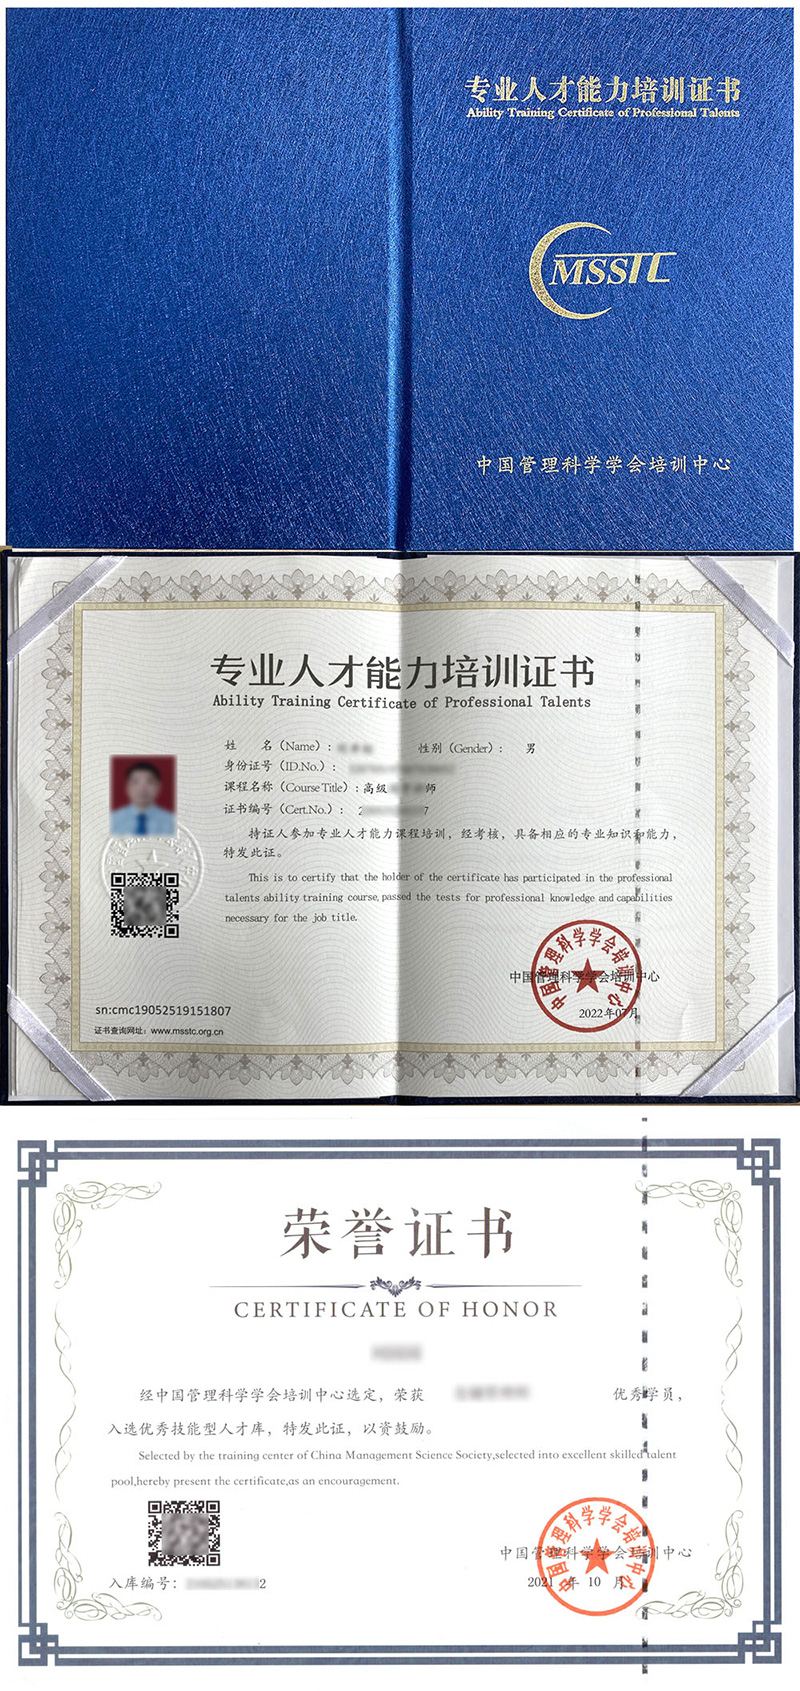 中国管理科学学会培训中心 专业人才能力培训证书 皮肤管理师证证书样本